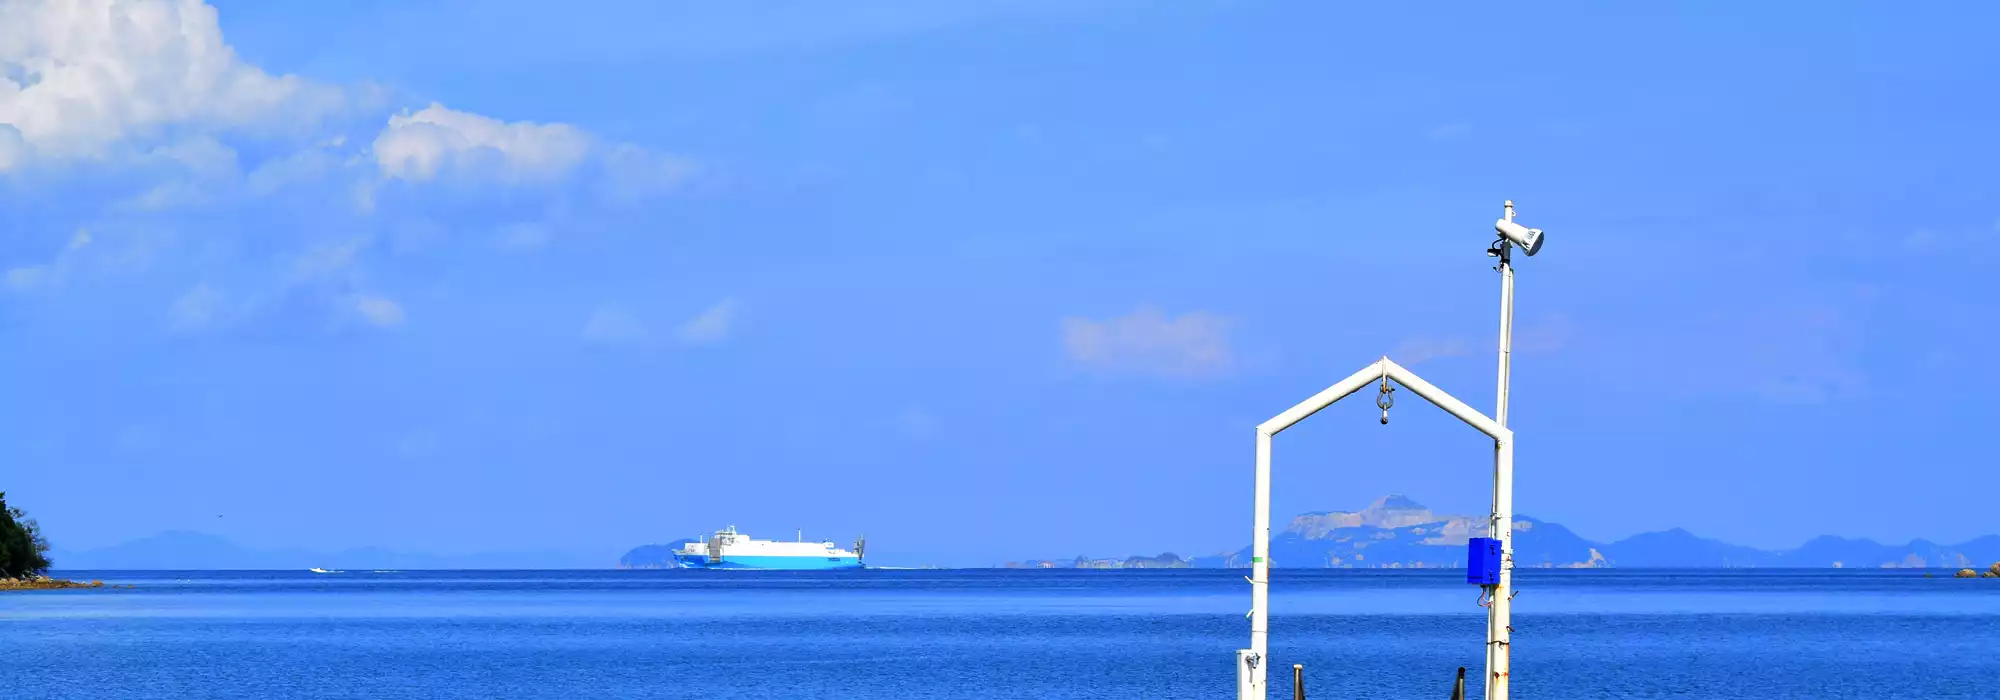 「シータイガーアイランドイン小豆島」から見える海と船